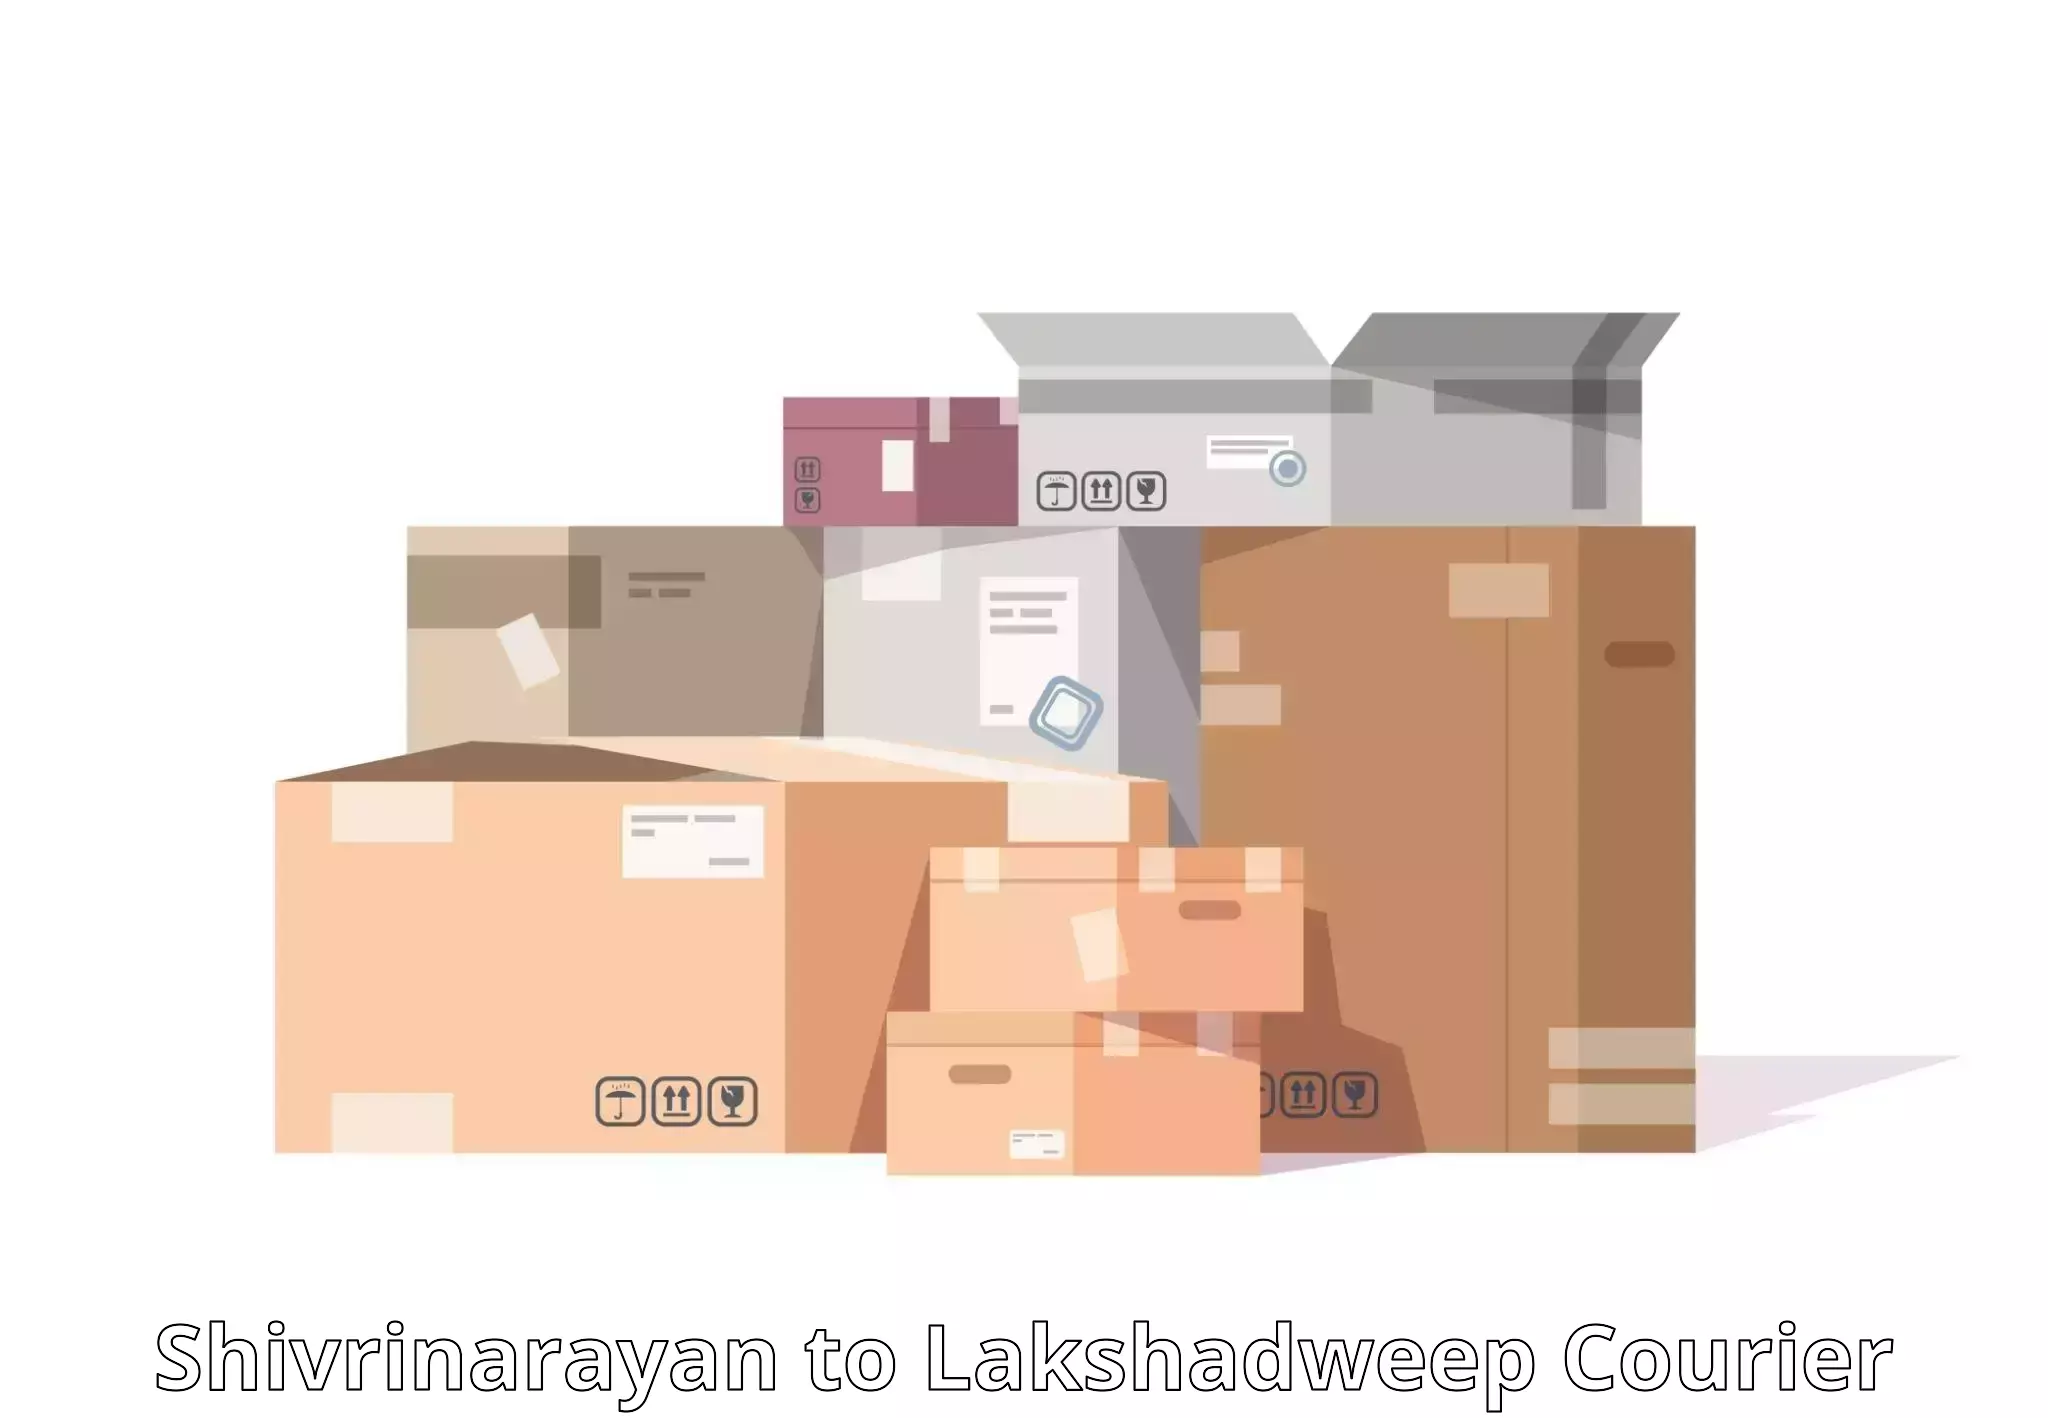 Expedited shipping solutions Shivrinarayan to Lakshadweep